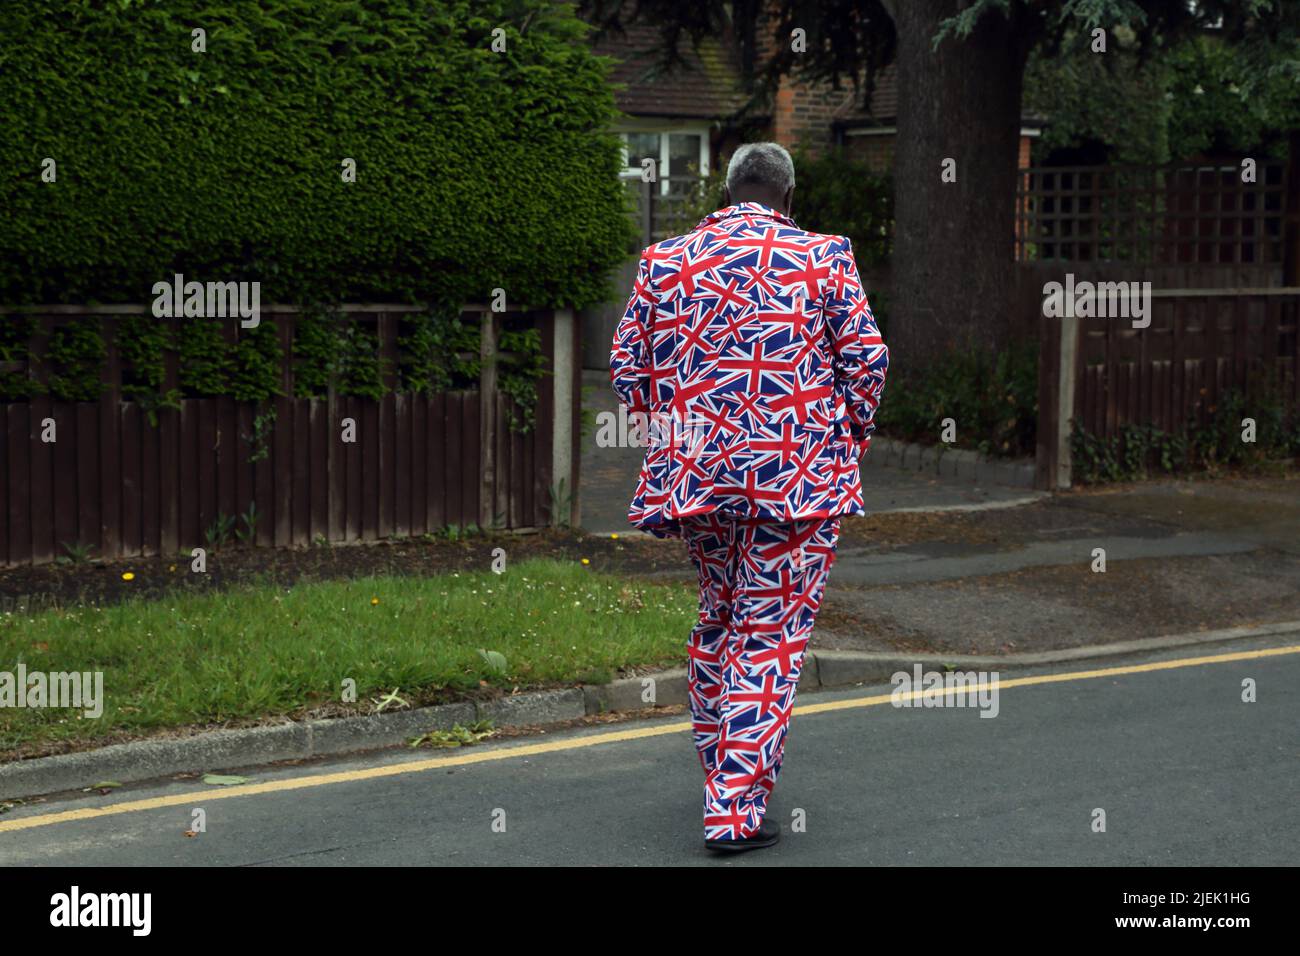 Homme portant un costume Union Jack pour la reine Elizabeth II Platinum Jubilee Street Party Surrey Angleterre Banque D'Images